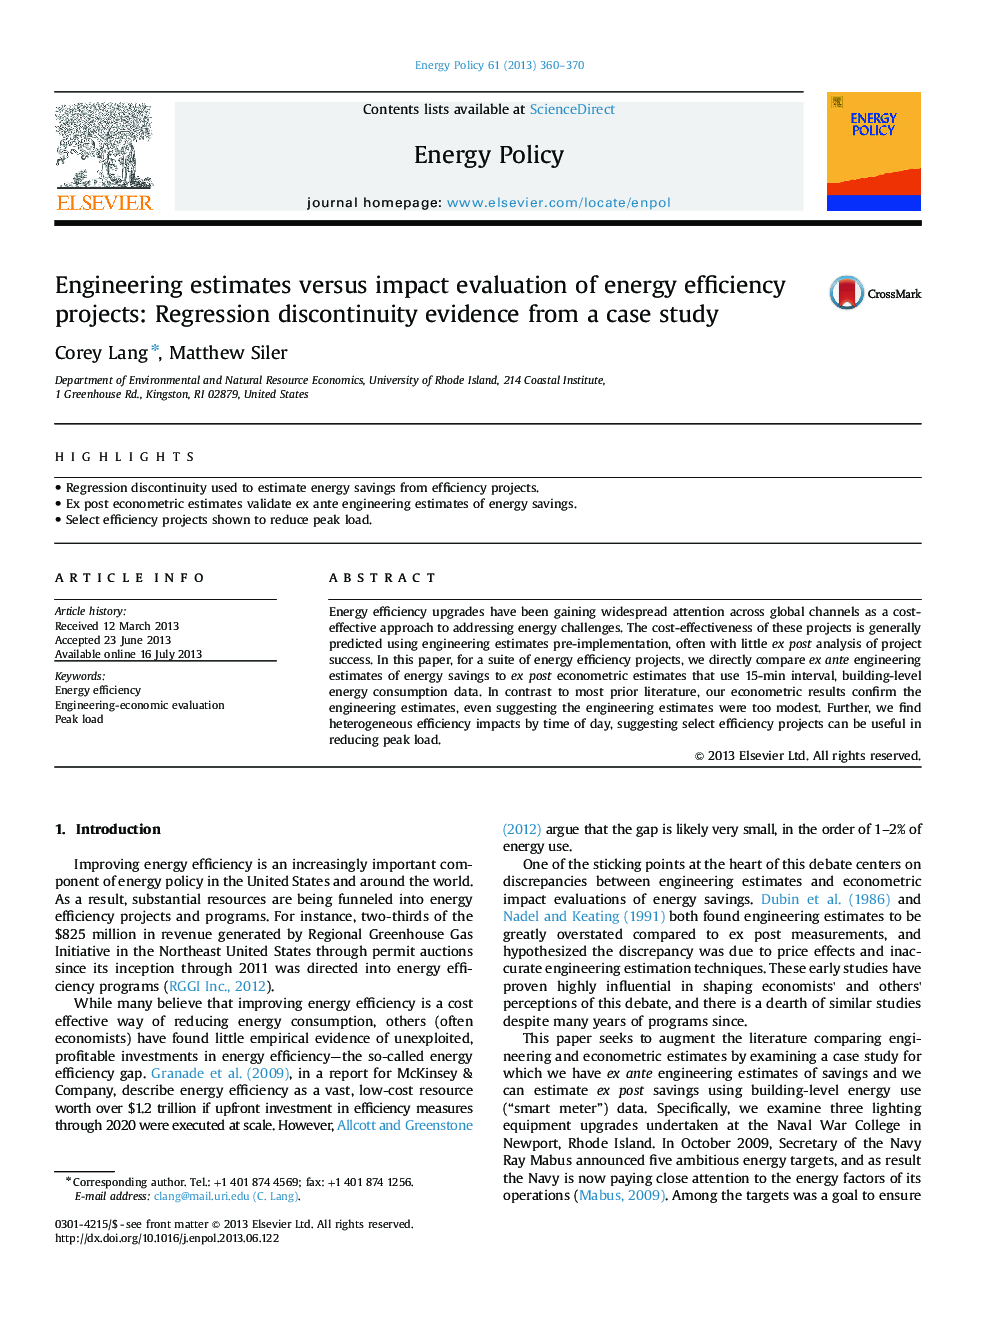 برآوردهای مهندسی در مقایسه با ارزیابی تأثیر پروژه های بهره وری انرژی: شواهد عدم انسجام رگرسیون از یک مطالعه موردی 